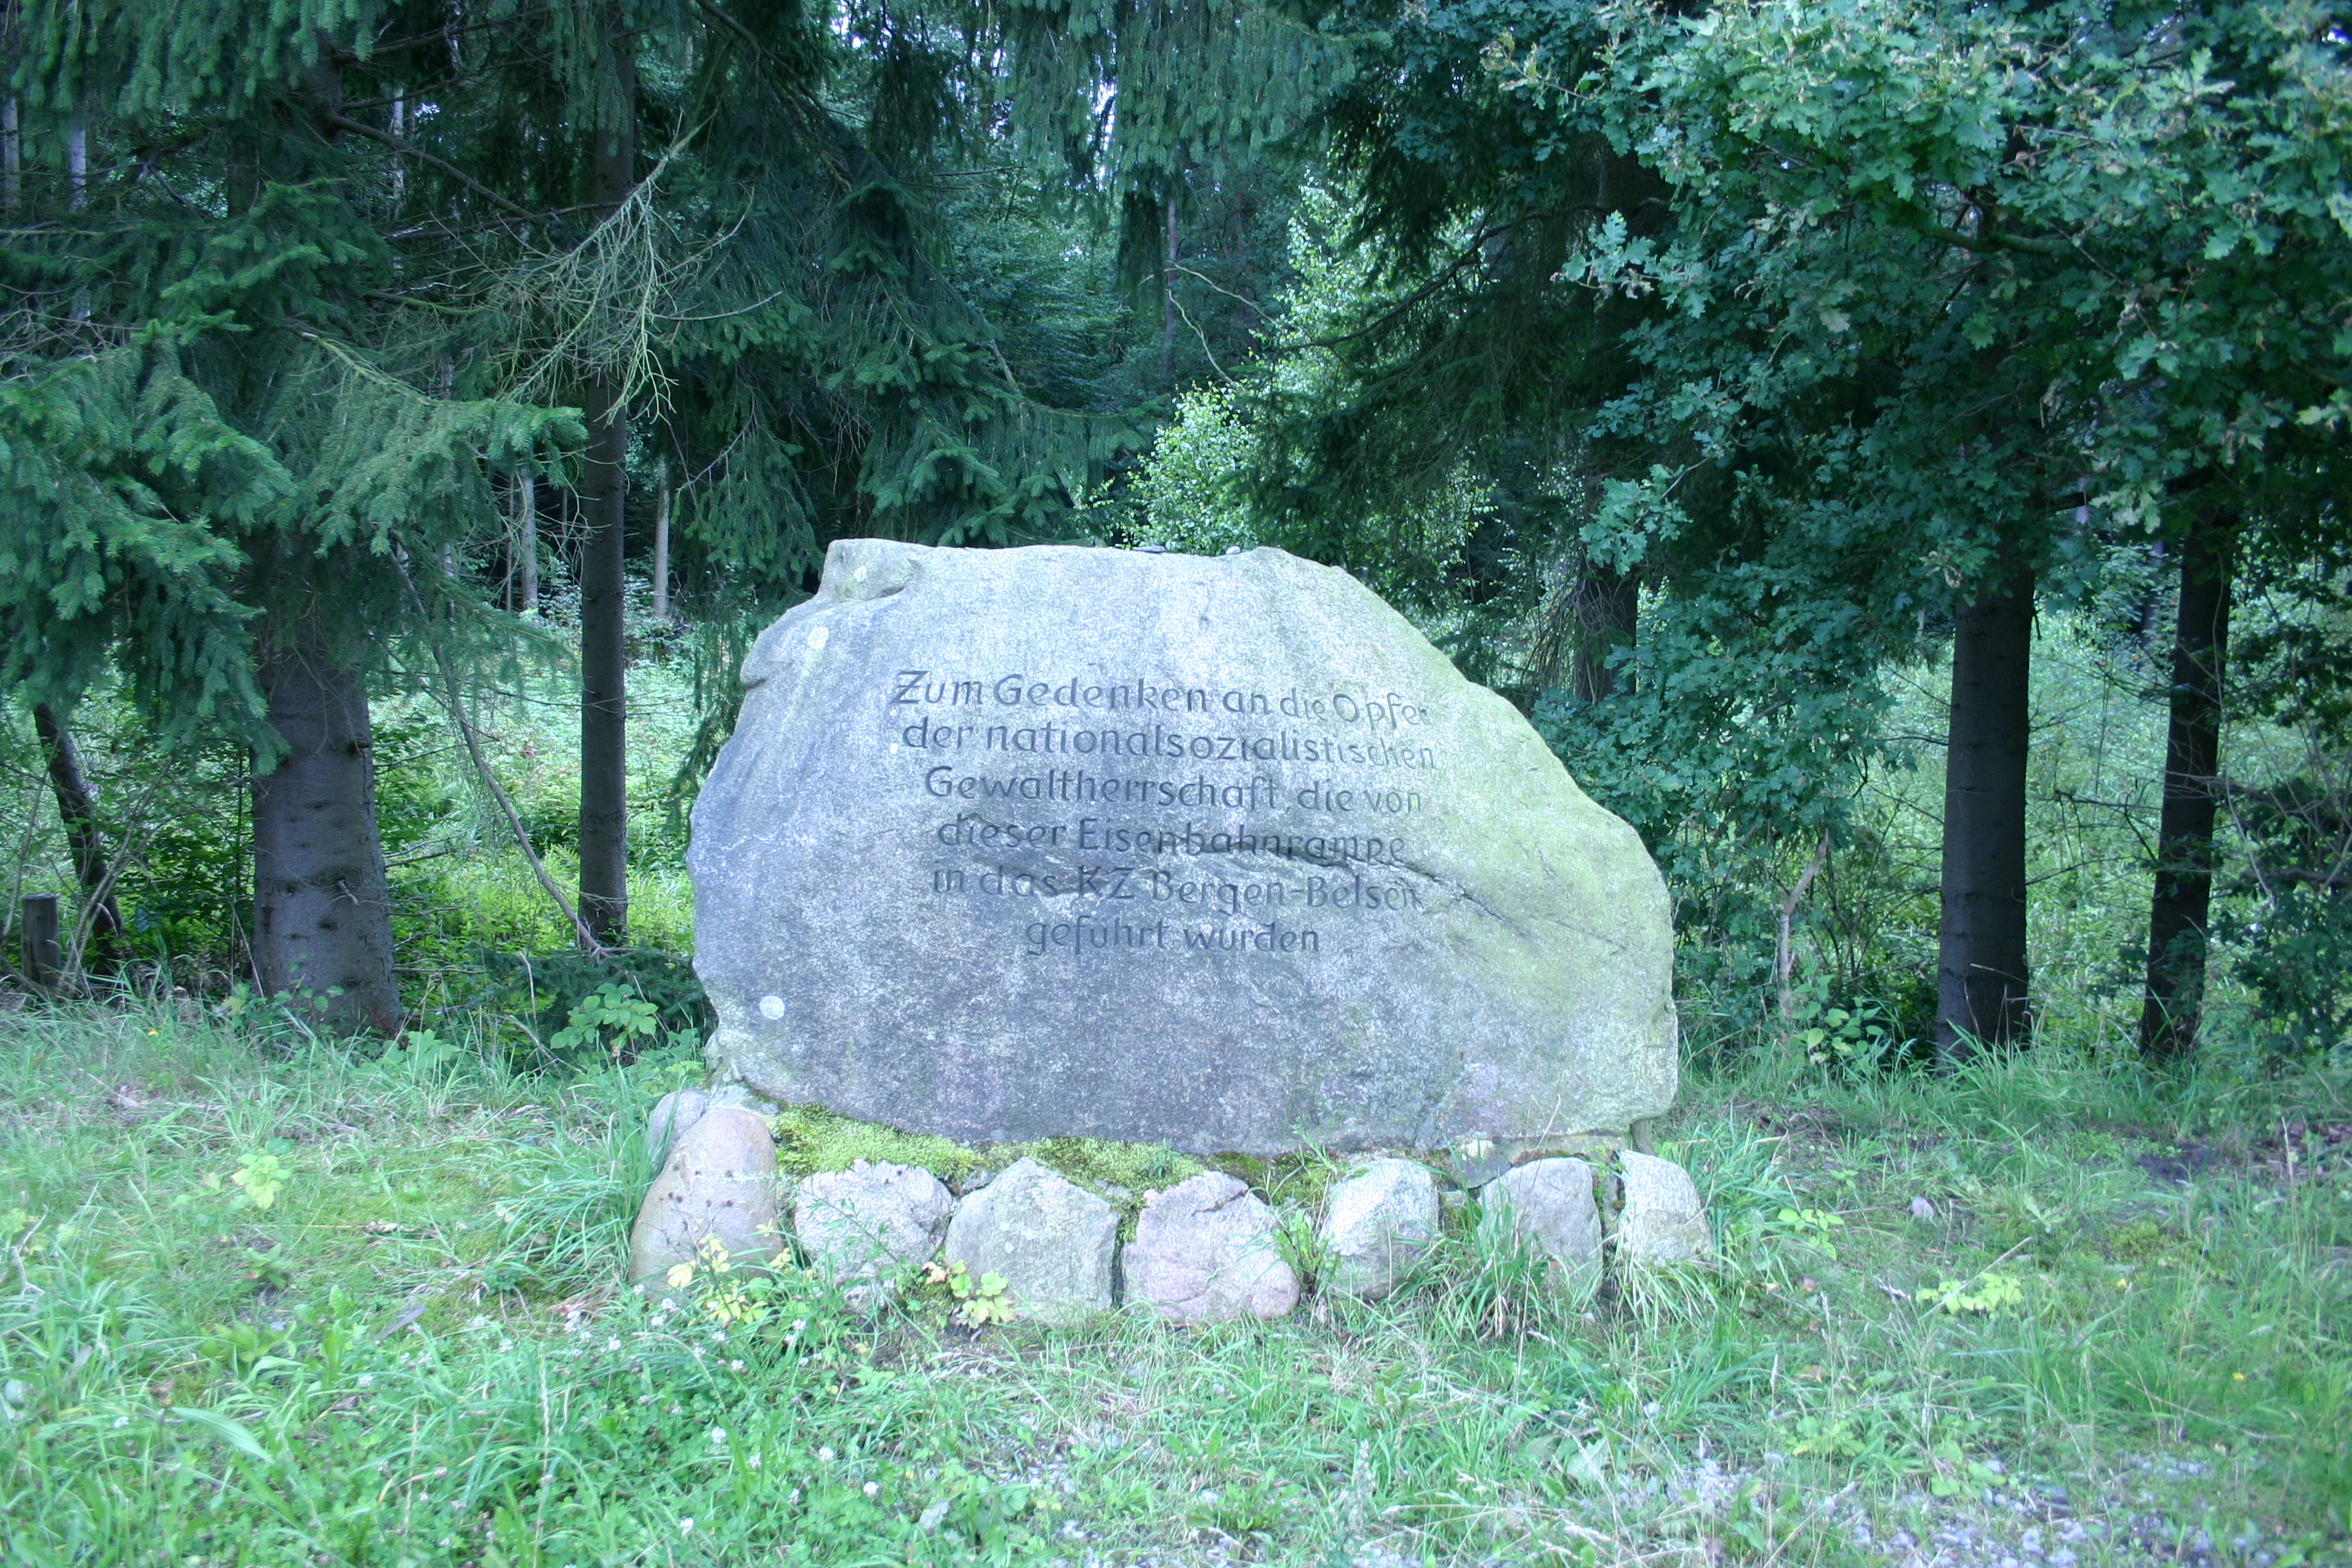 Pomnik na terenie miejsca pamięci